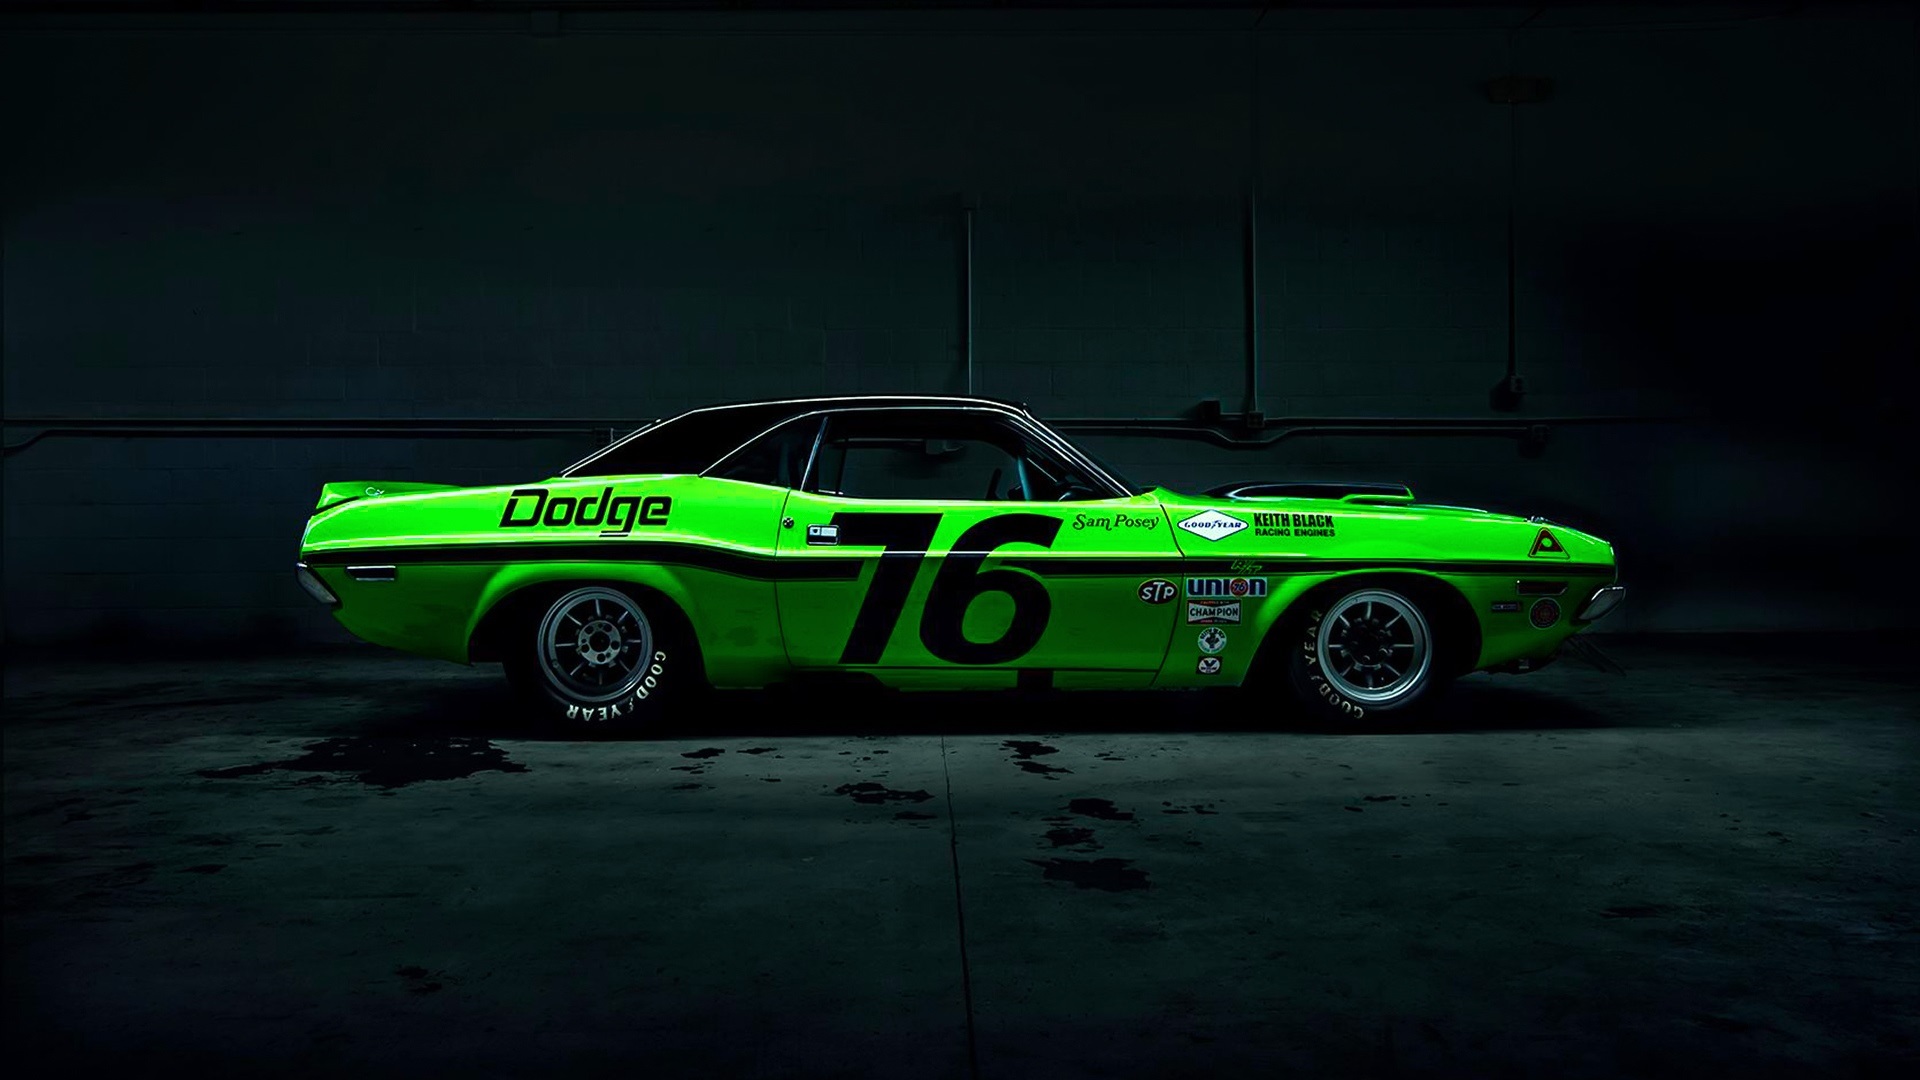 Dodge-Challenger-green-race-car_1920x1080.jpg